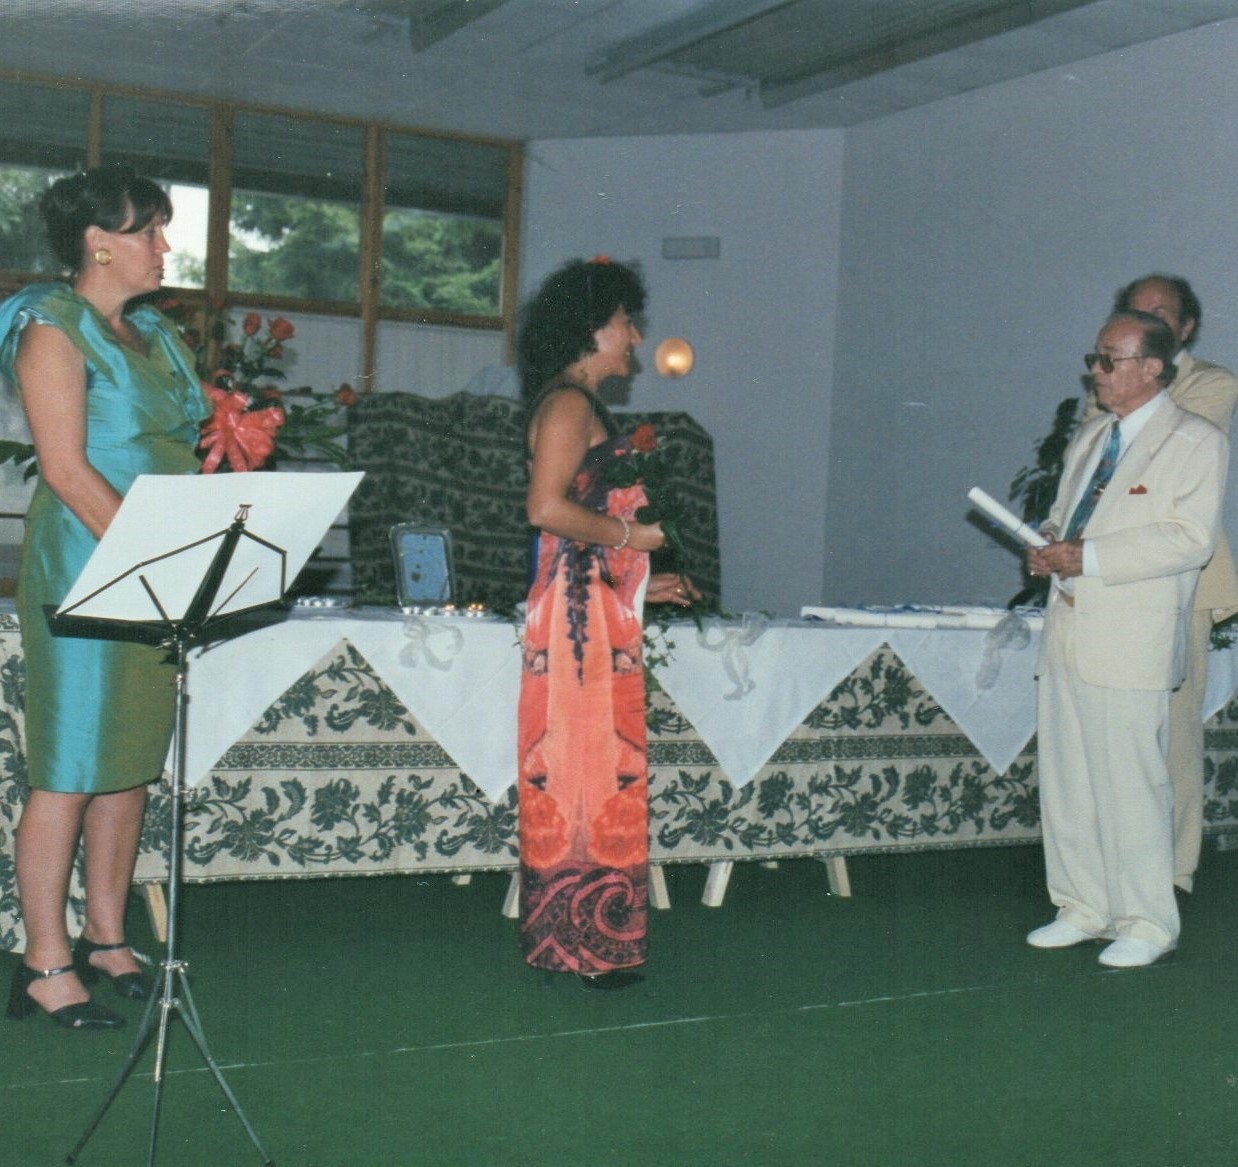 Luglio 2000 - Cerimonia conferimento Master in Core Energetica